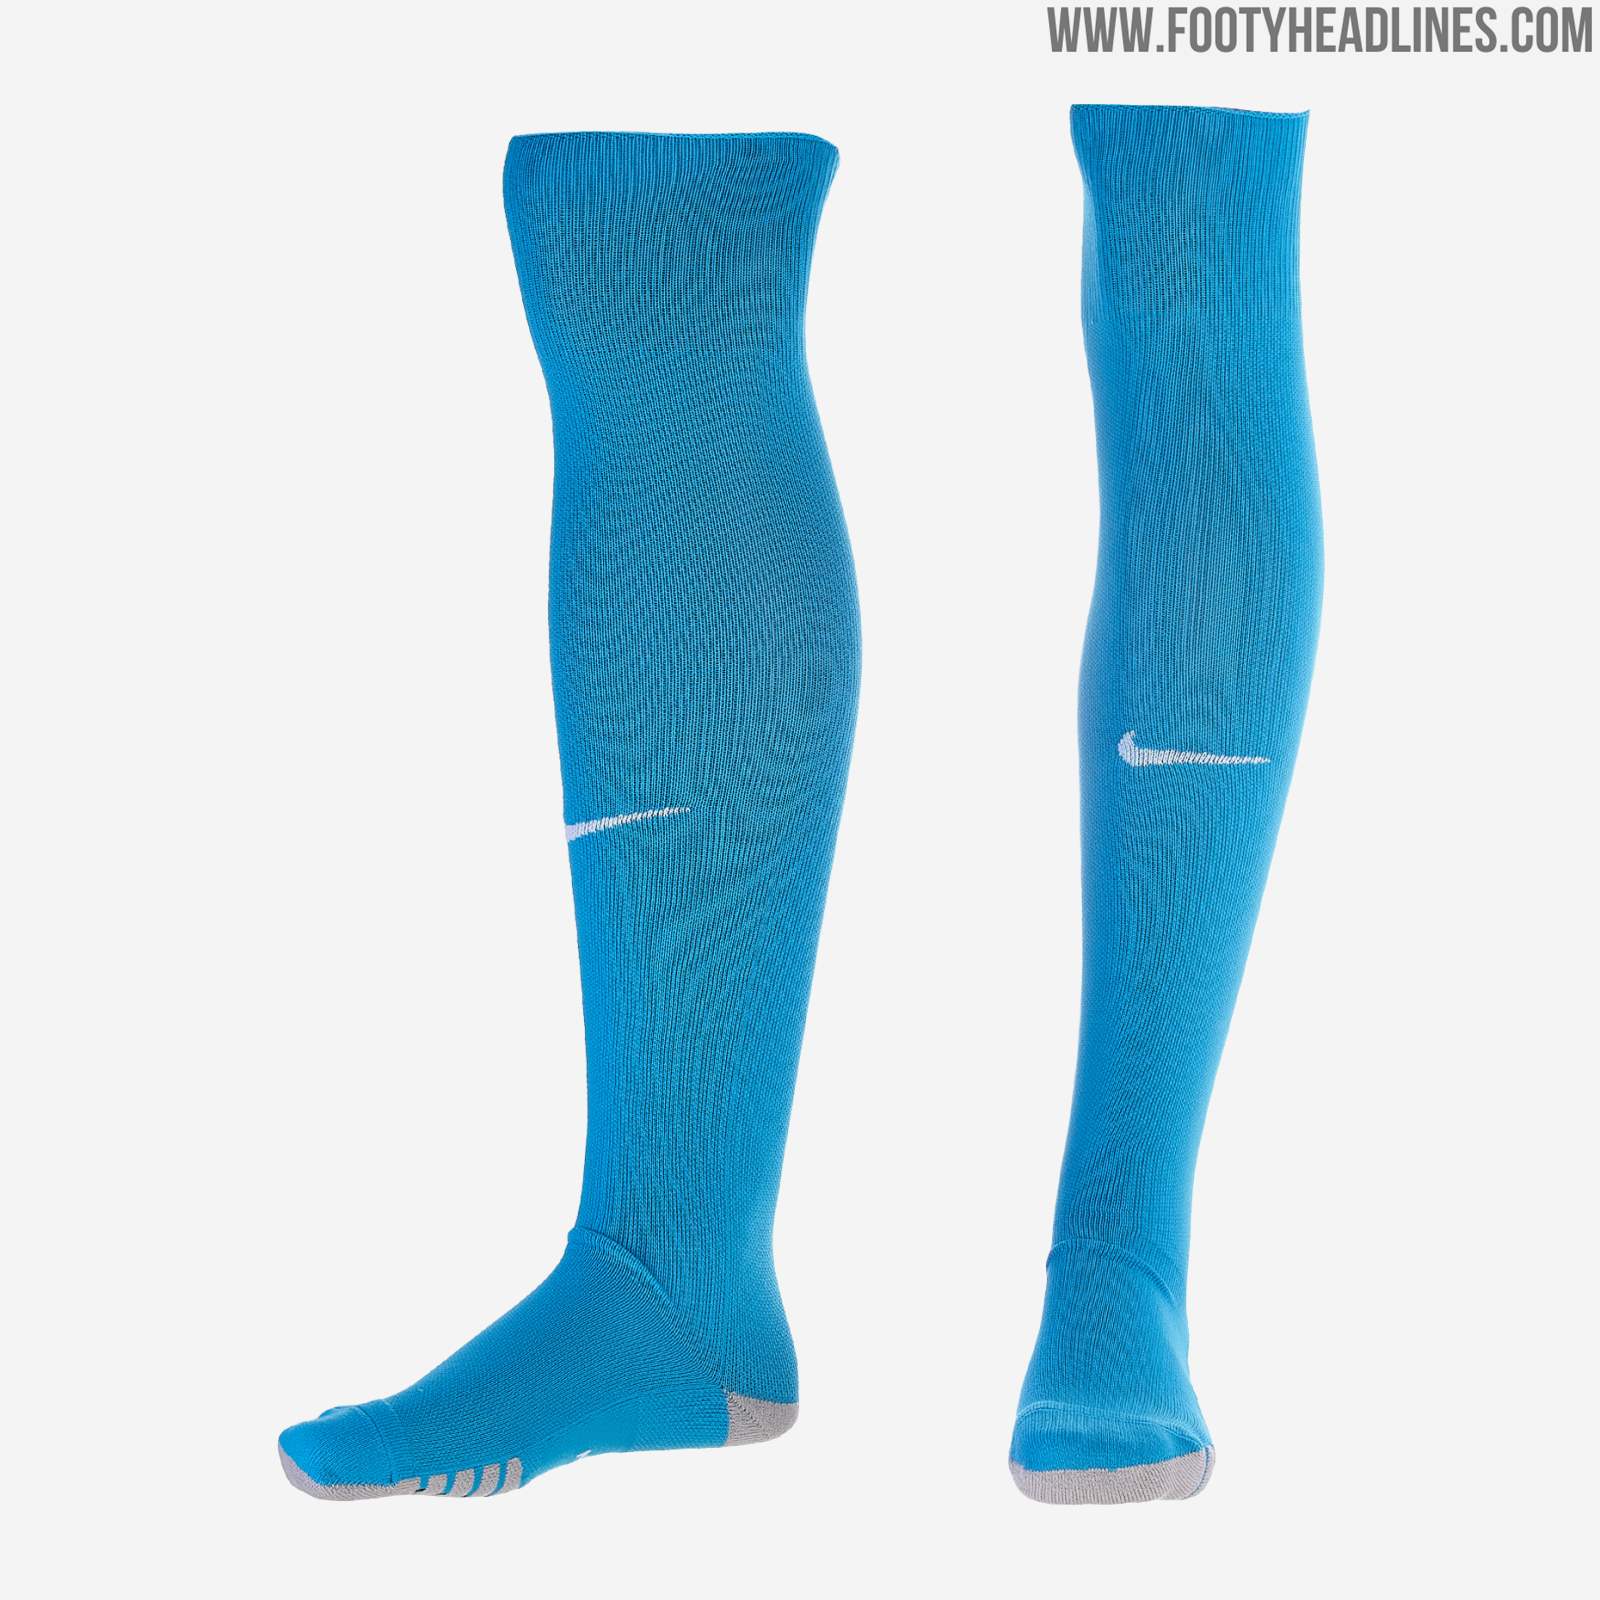 Nike Zenit 19-20 Home Kit Released - Footy Headlines